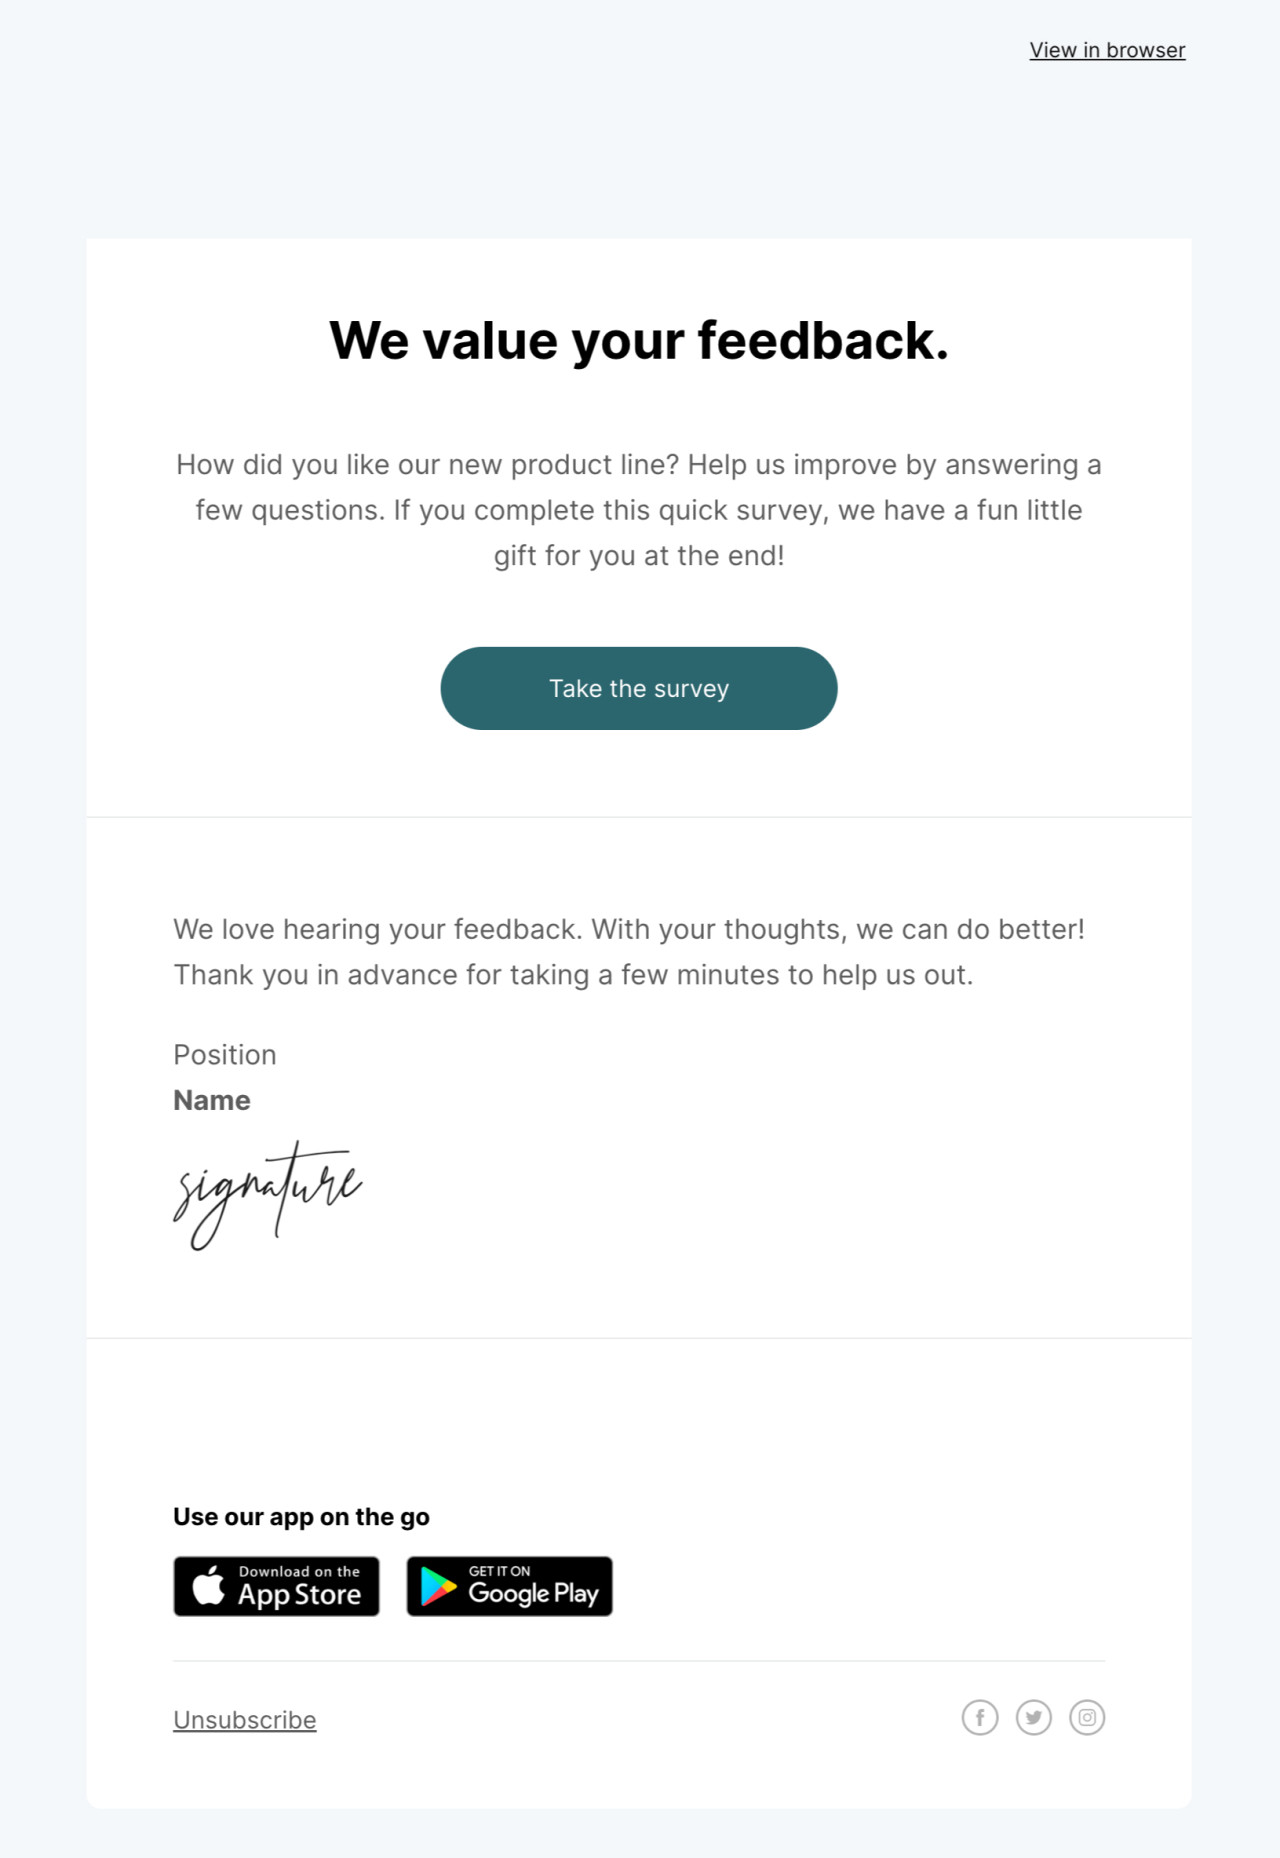 Email para solicitar feedback plantilla creada por MailerLite